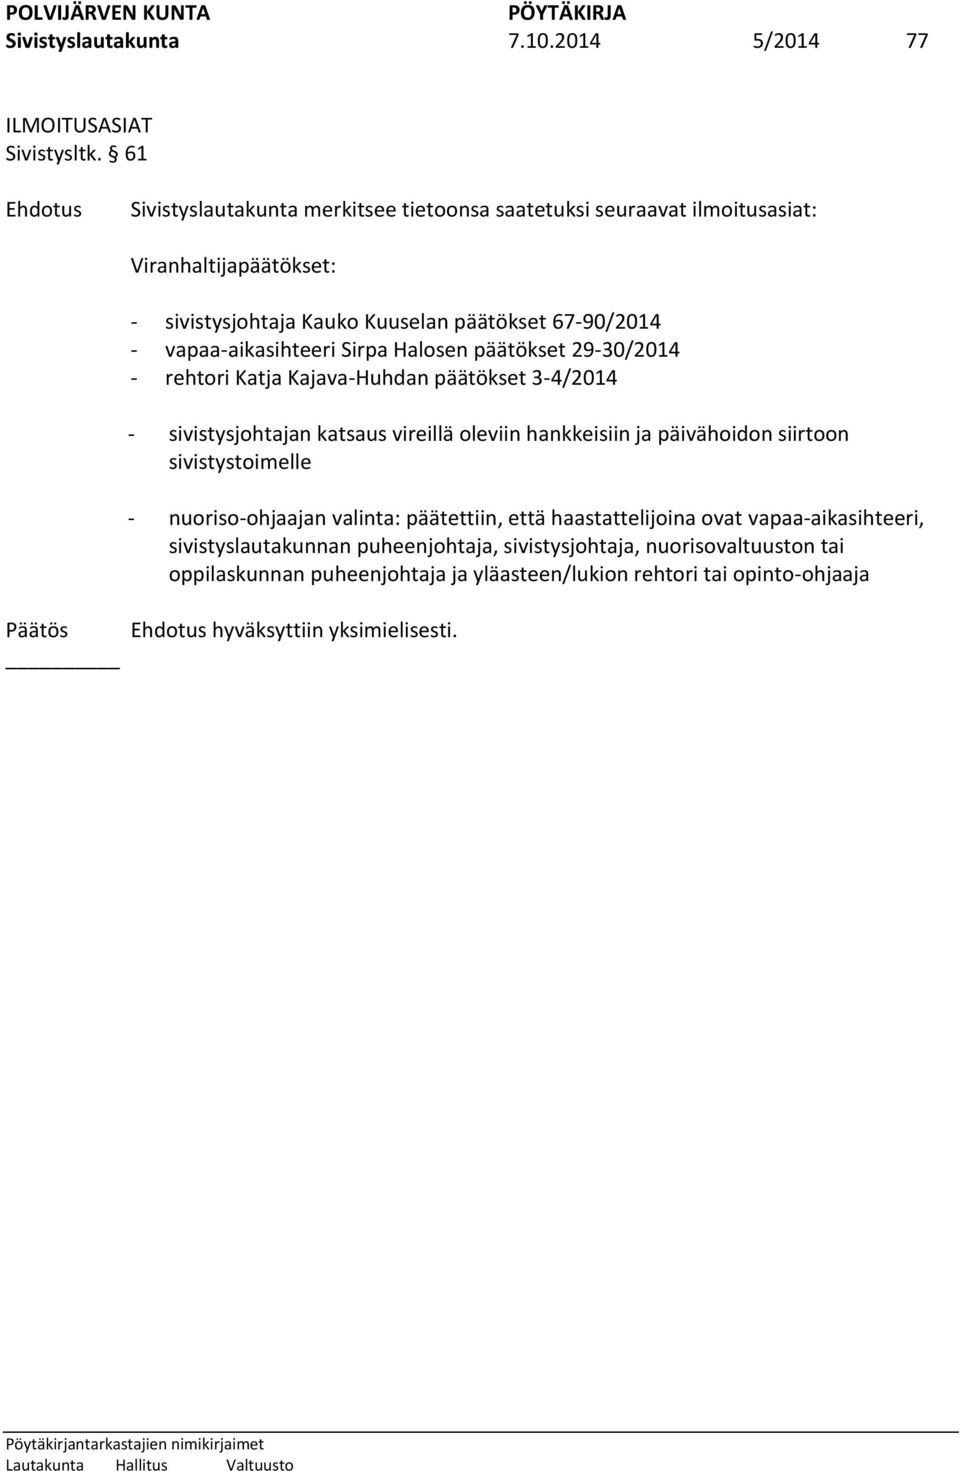 vapaa-aikasihteeri Sirpa Halosen päätökset 29-30/2014 - rehtori Katja Kajava-Huhdan päätökset 3-4/2014 - sivistysjohtajan katsaus vireillä oleviin hankkeisiin ja päivähoidon